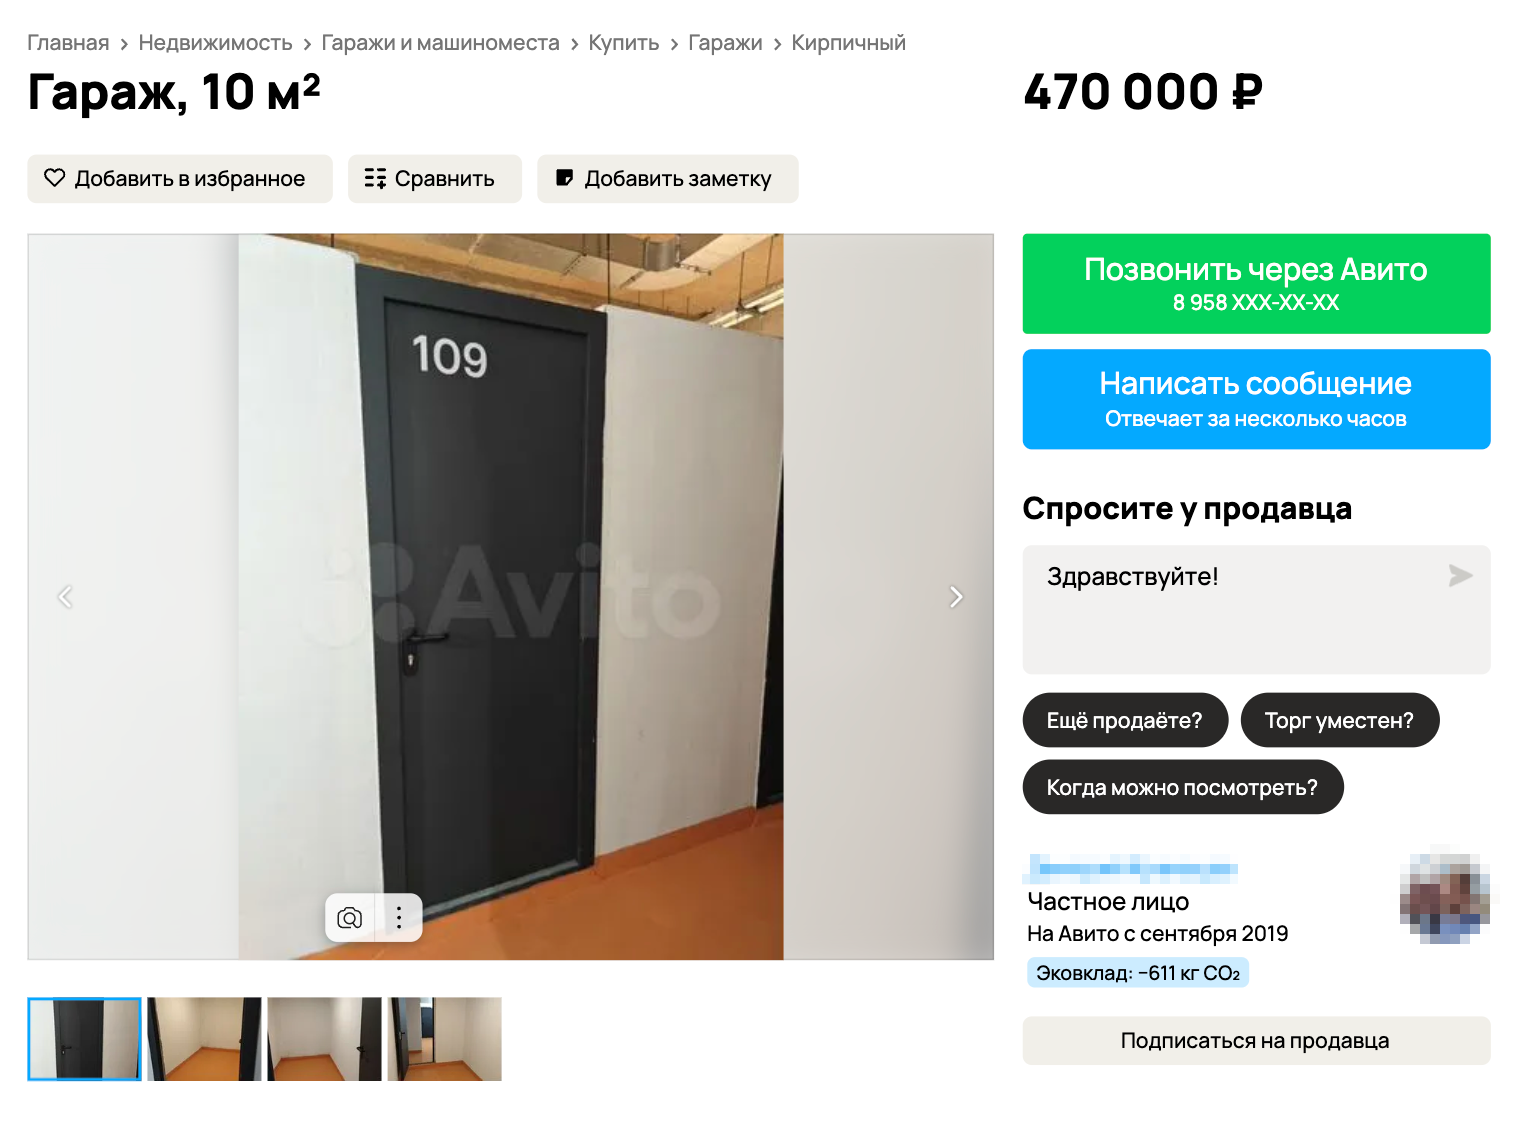 На «Авито» нет специального раздела для кладовых помещений, их надо искать в разделе гаражей и машино⁠-⁠мест. Источник: avito.ru